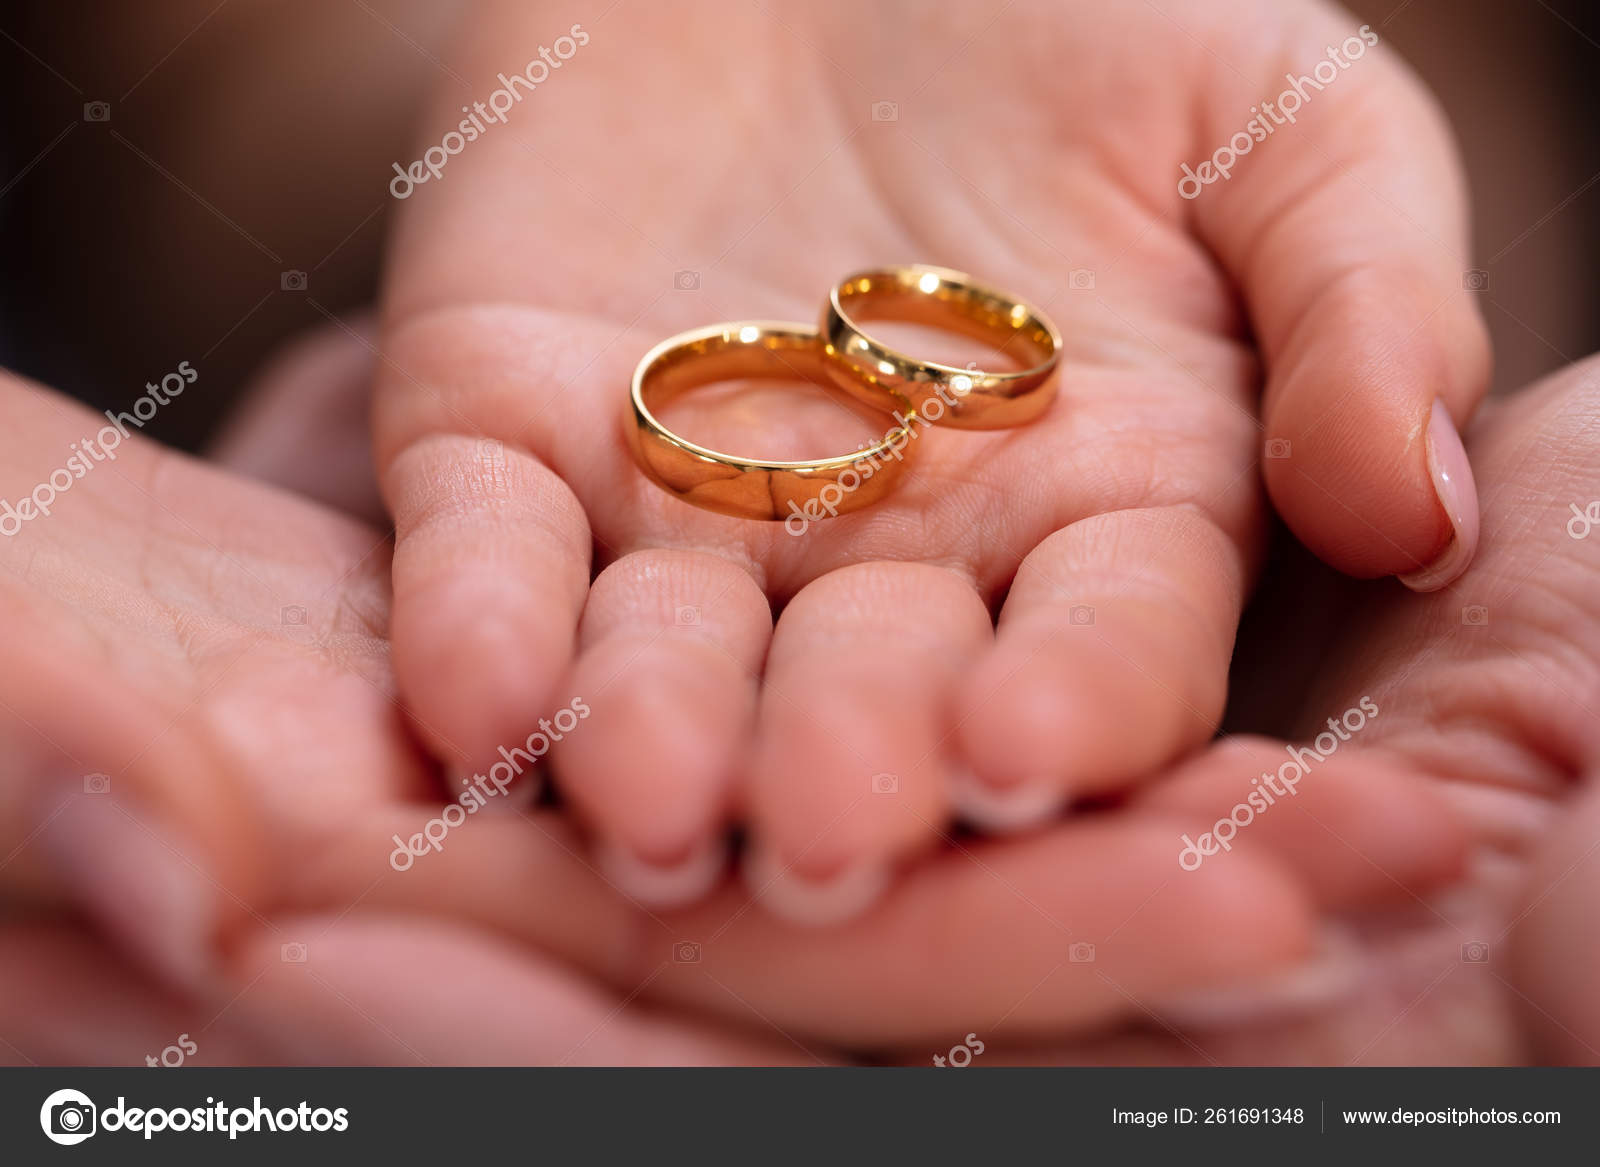 Engagement Ring Finger vs Wedding Ring Finger Explained | SH Jewellery